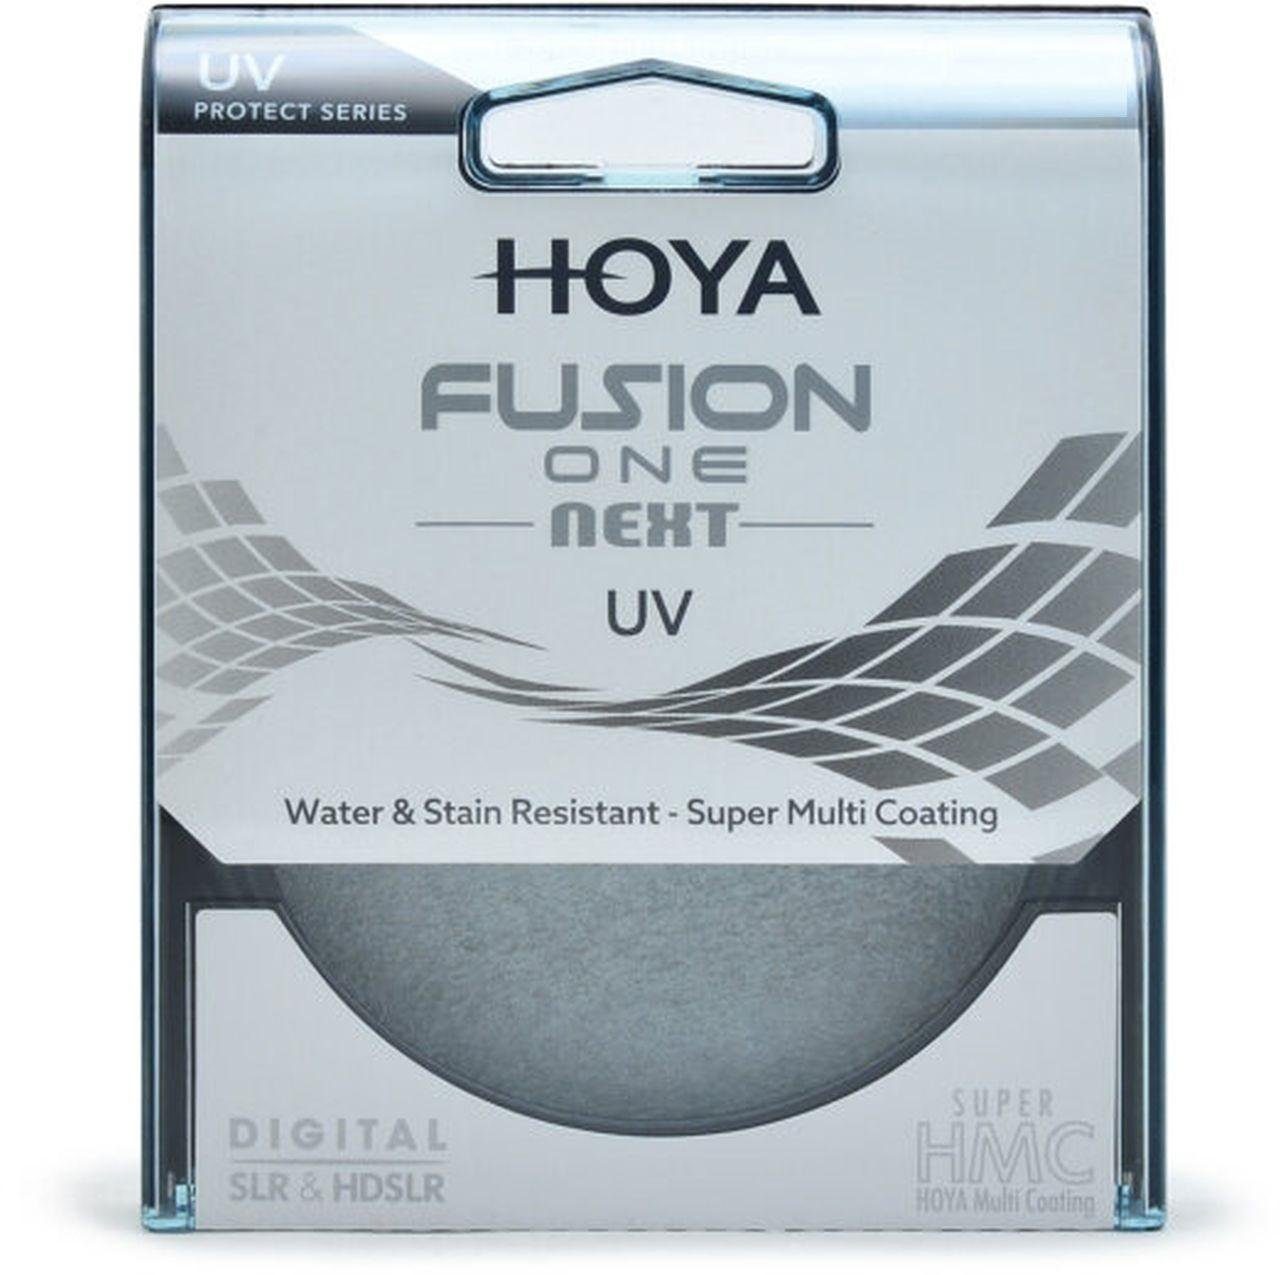 Hoya Fusion ONE Next UV-Filter 43mm Objektivzubehör | Objektivfilter